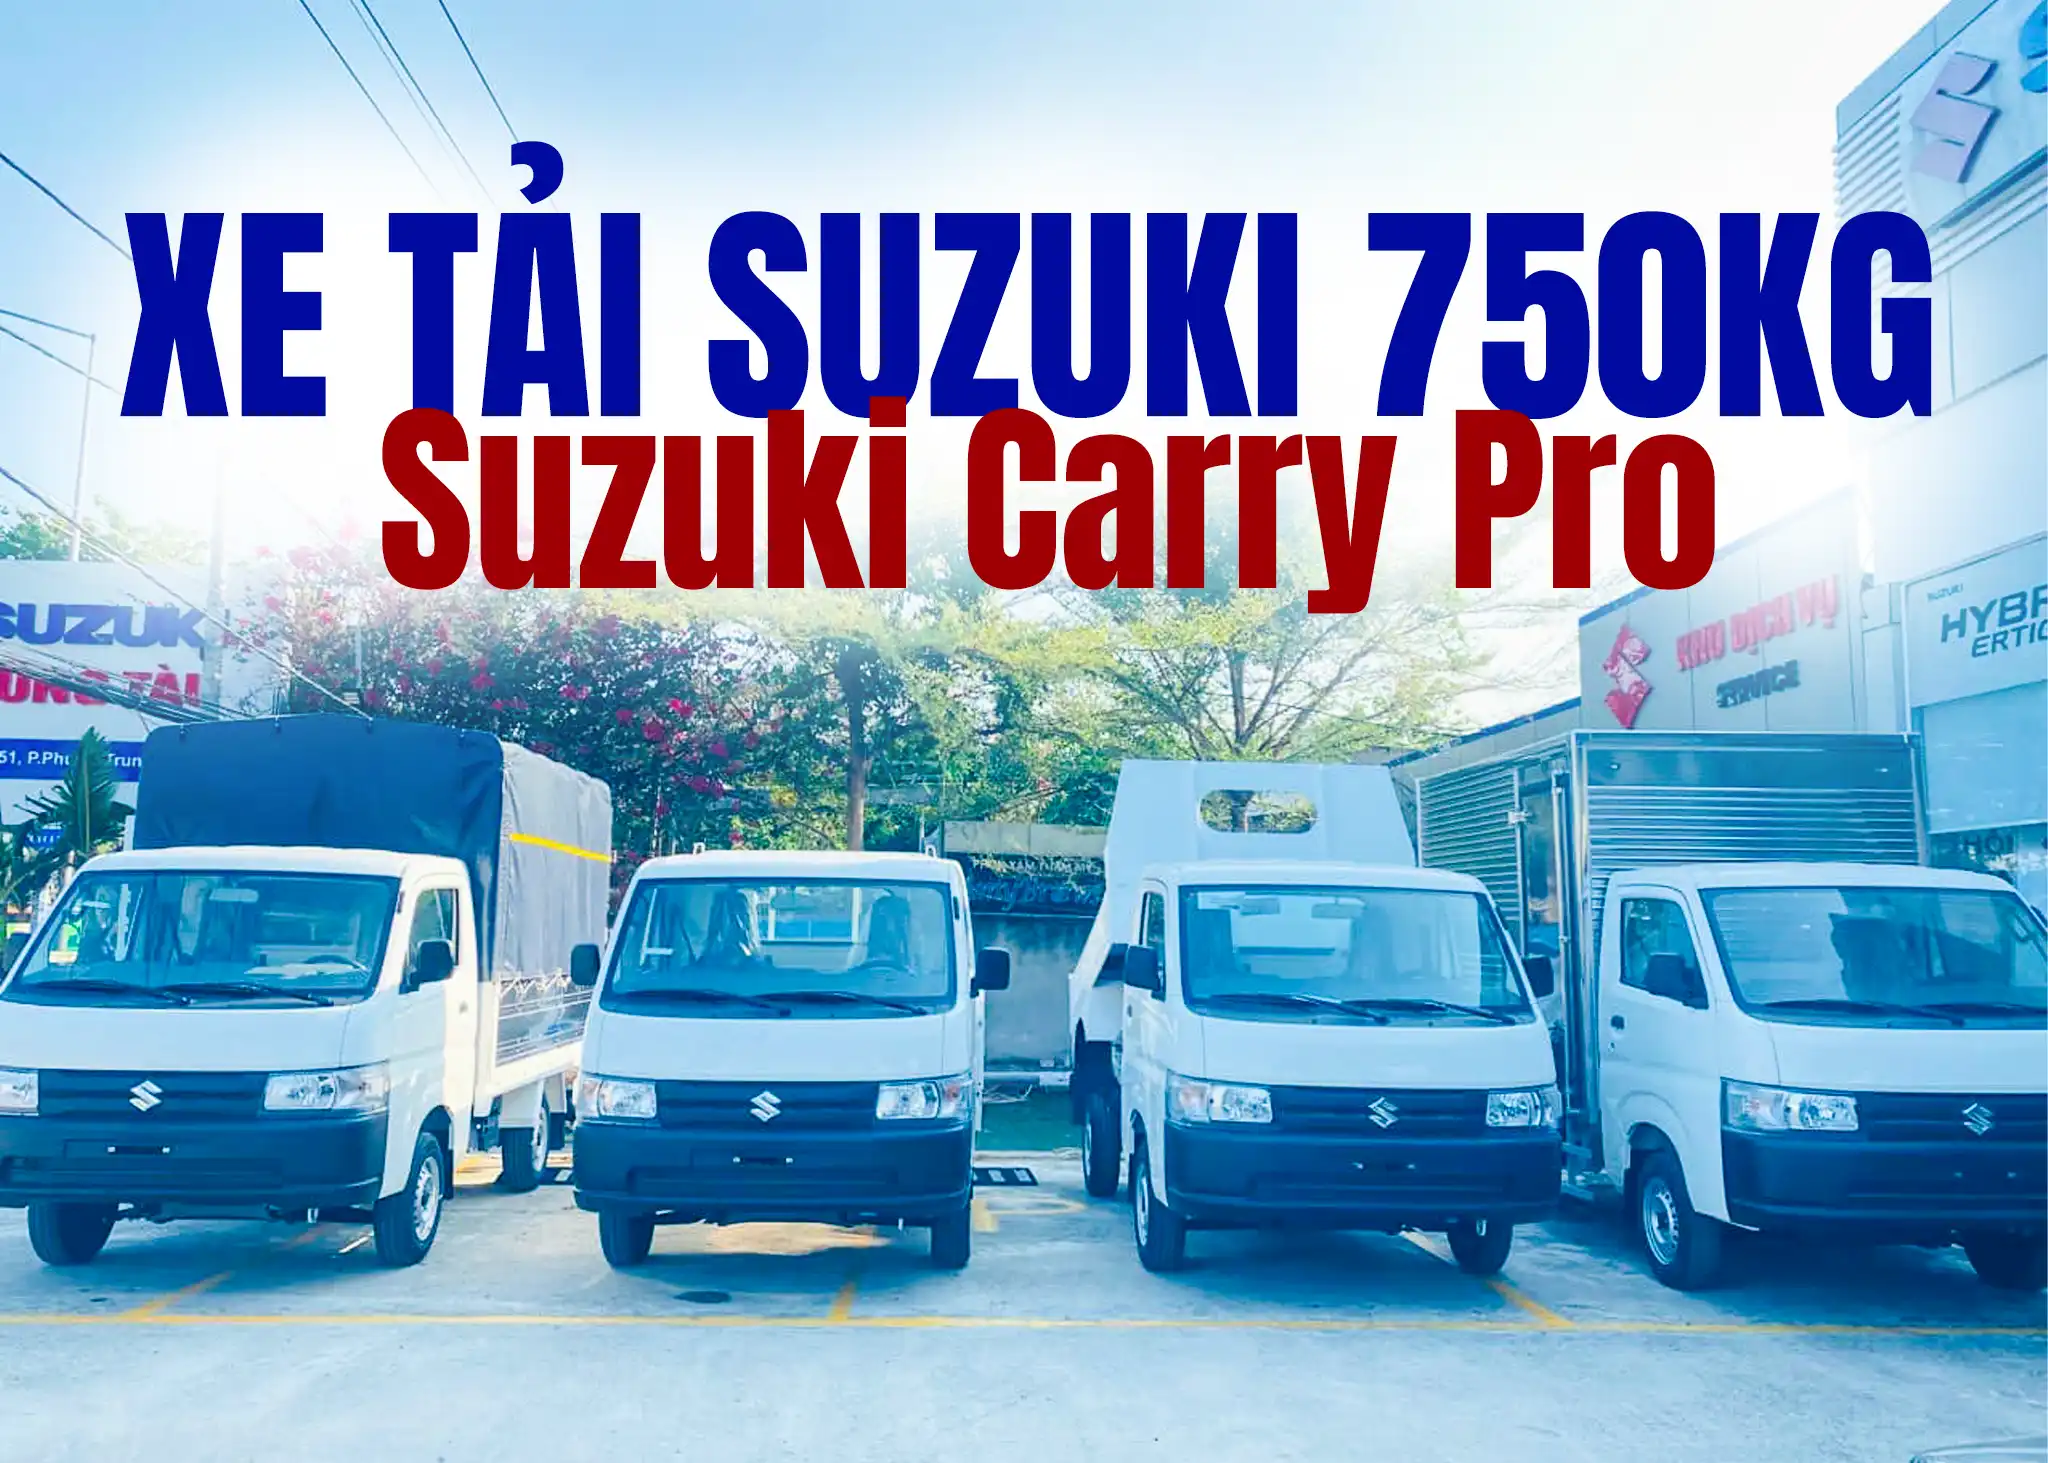 suzuki-supper-carry-pro-750kg